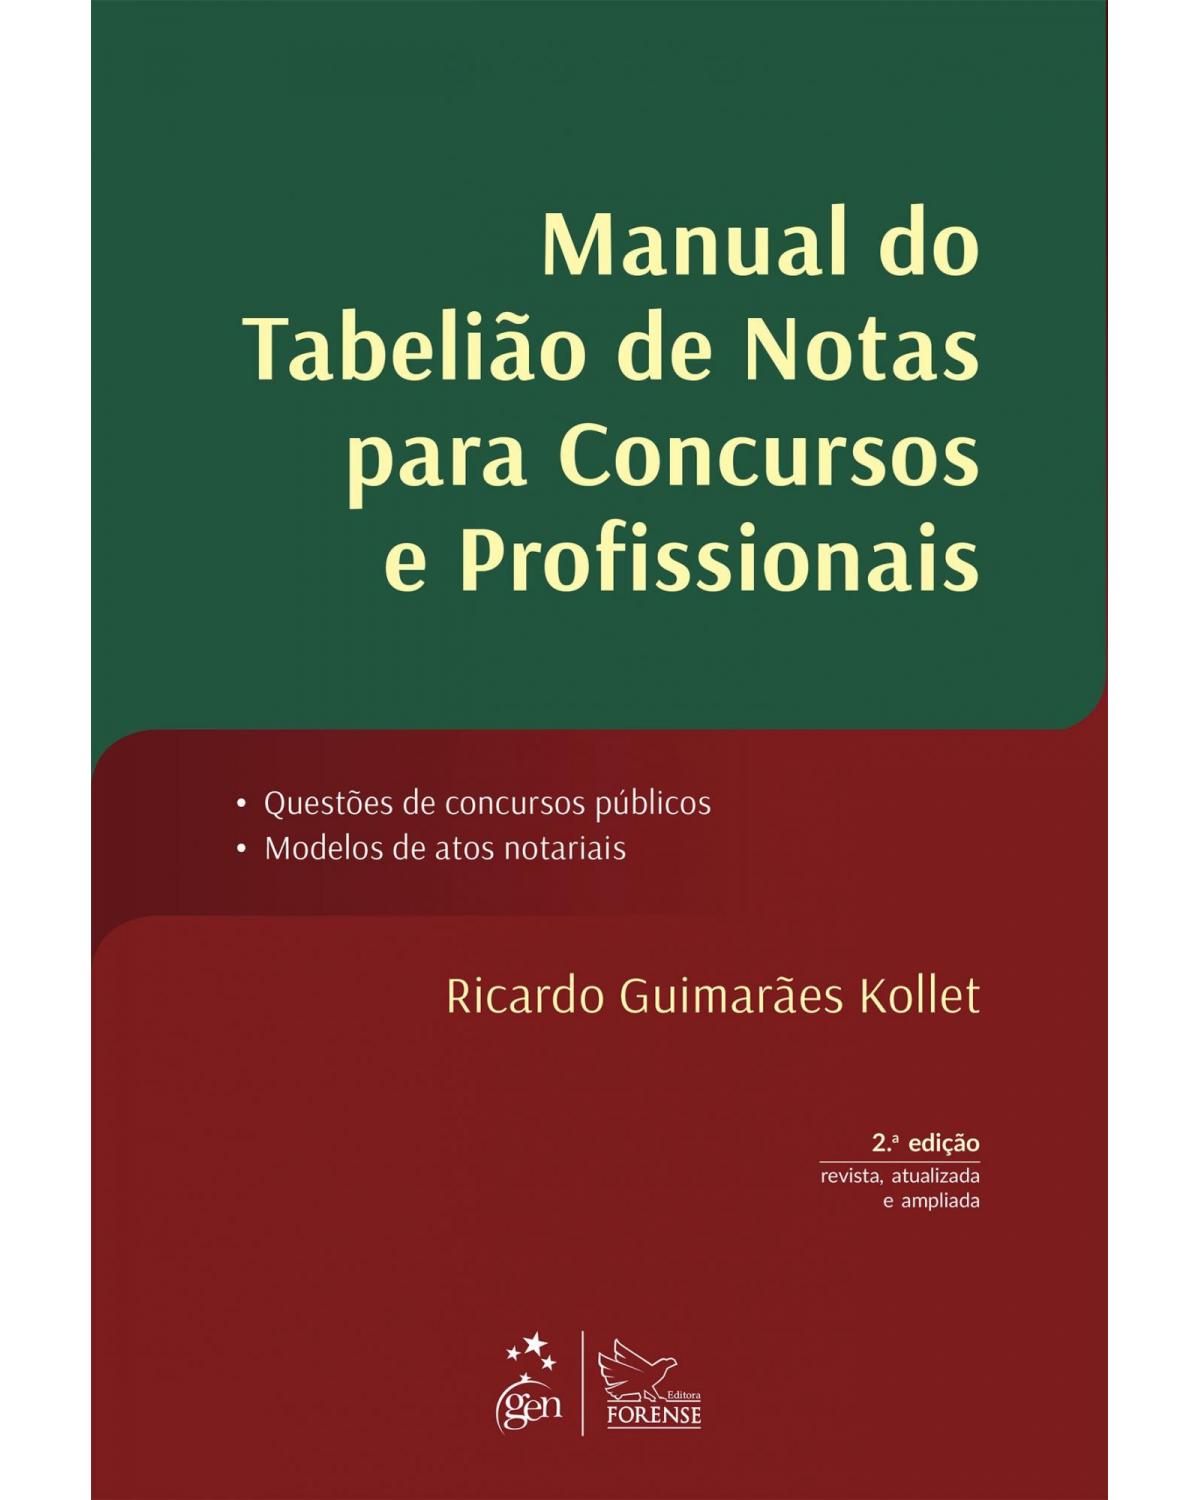 Manual do tabelião de notas para concursos e profissionais - Questões de concursos públicos, modelos de atos notariais - 2ª Edição | 2015